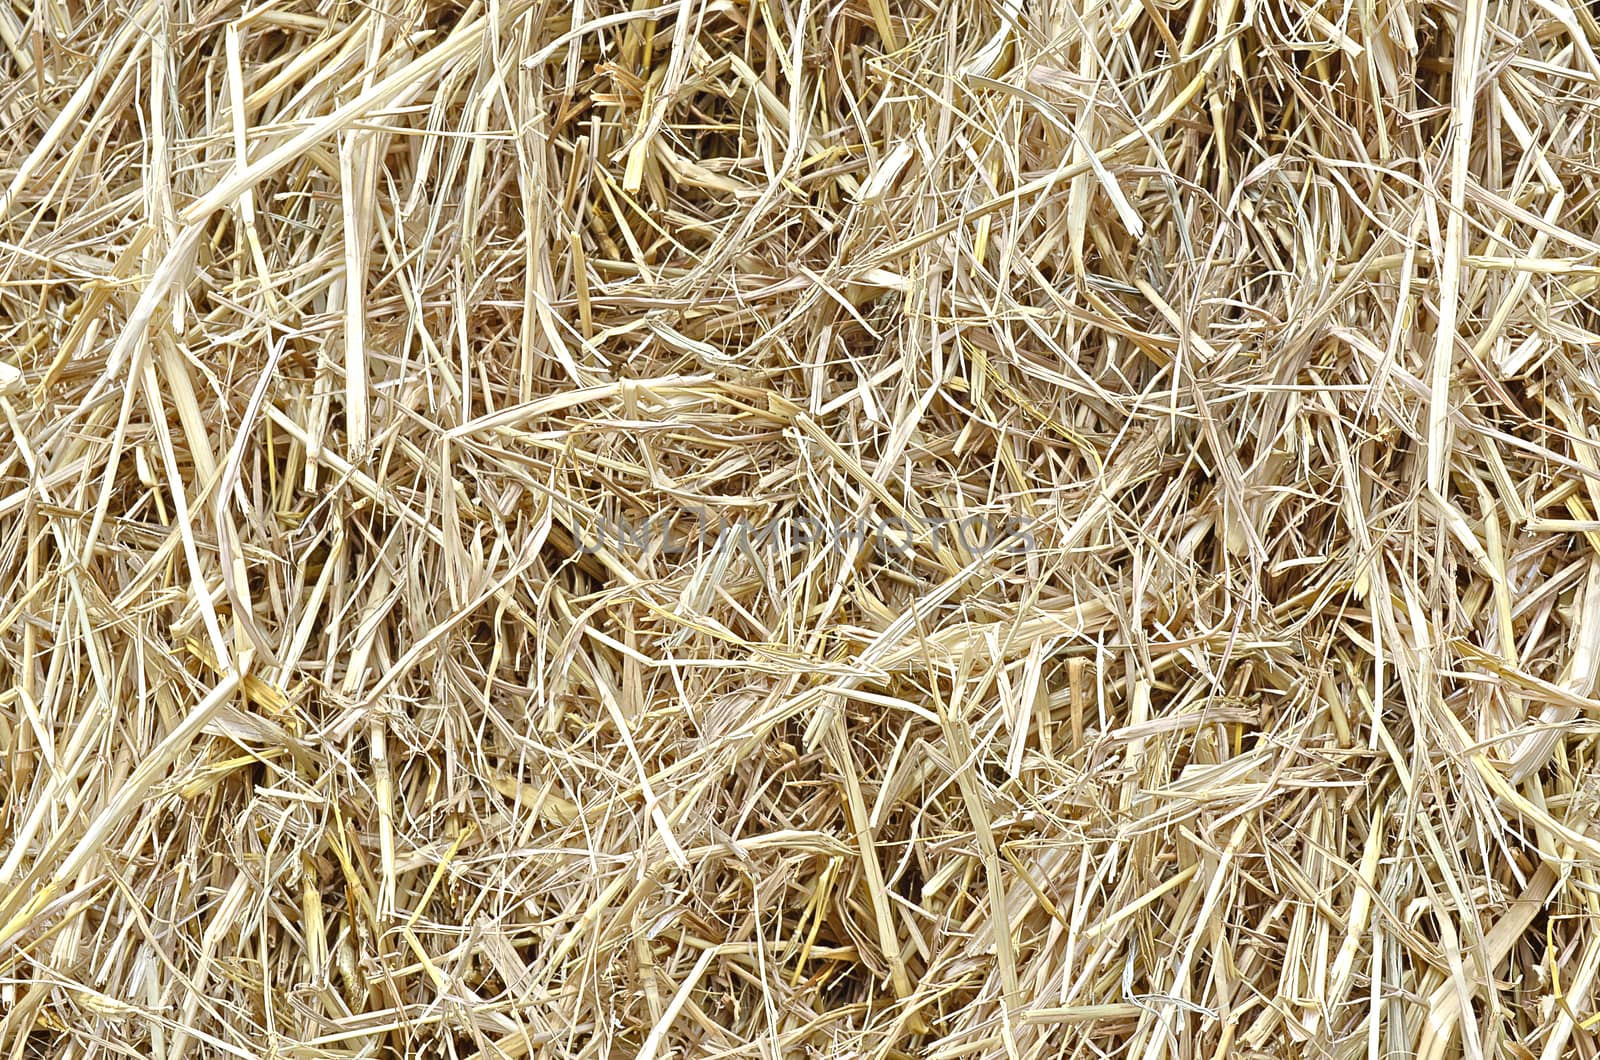 Plie of rice Straw by kobfujar